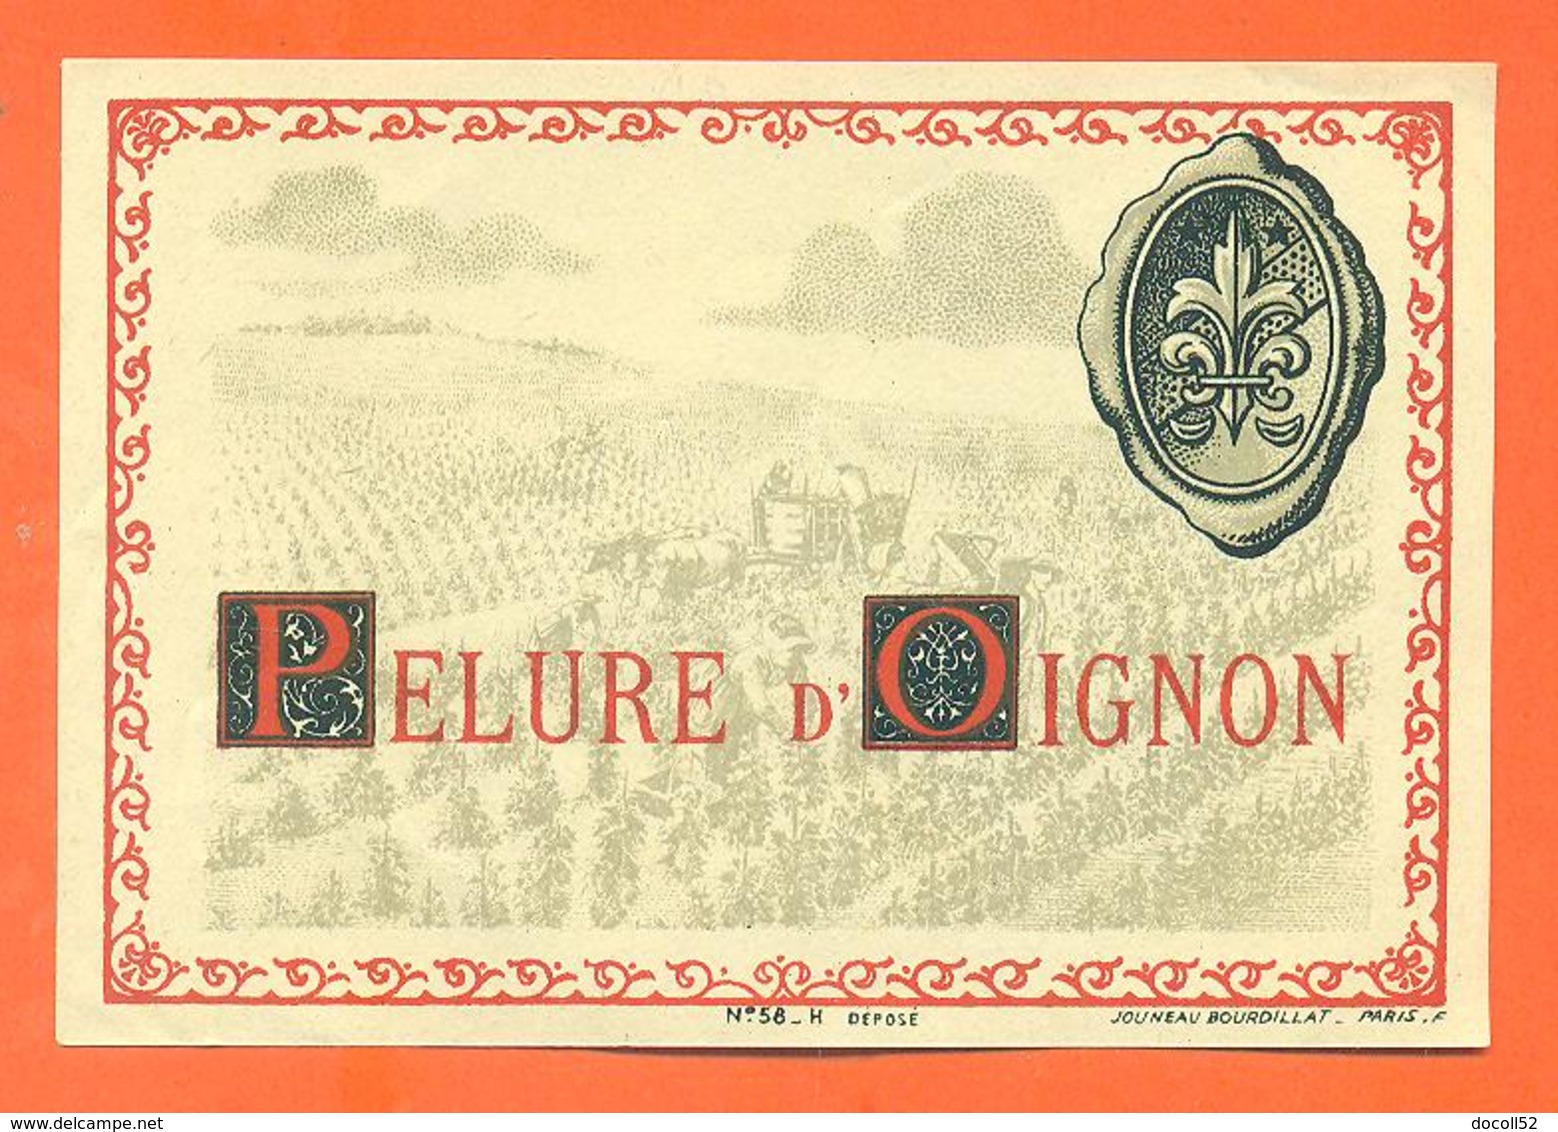 étiquette Ancienne Vin De Pelure D'oignon - 75 Cl - Vino Rosado